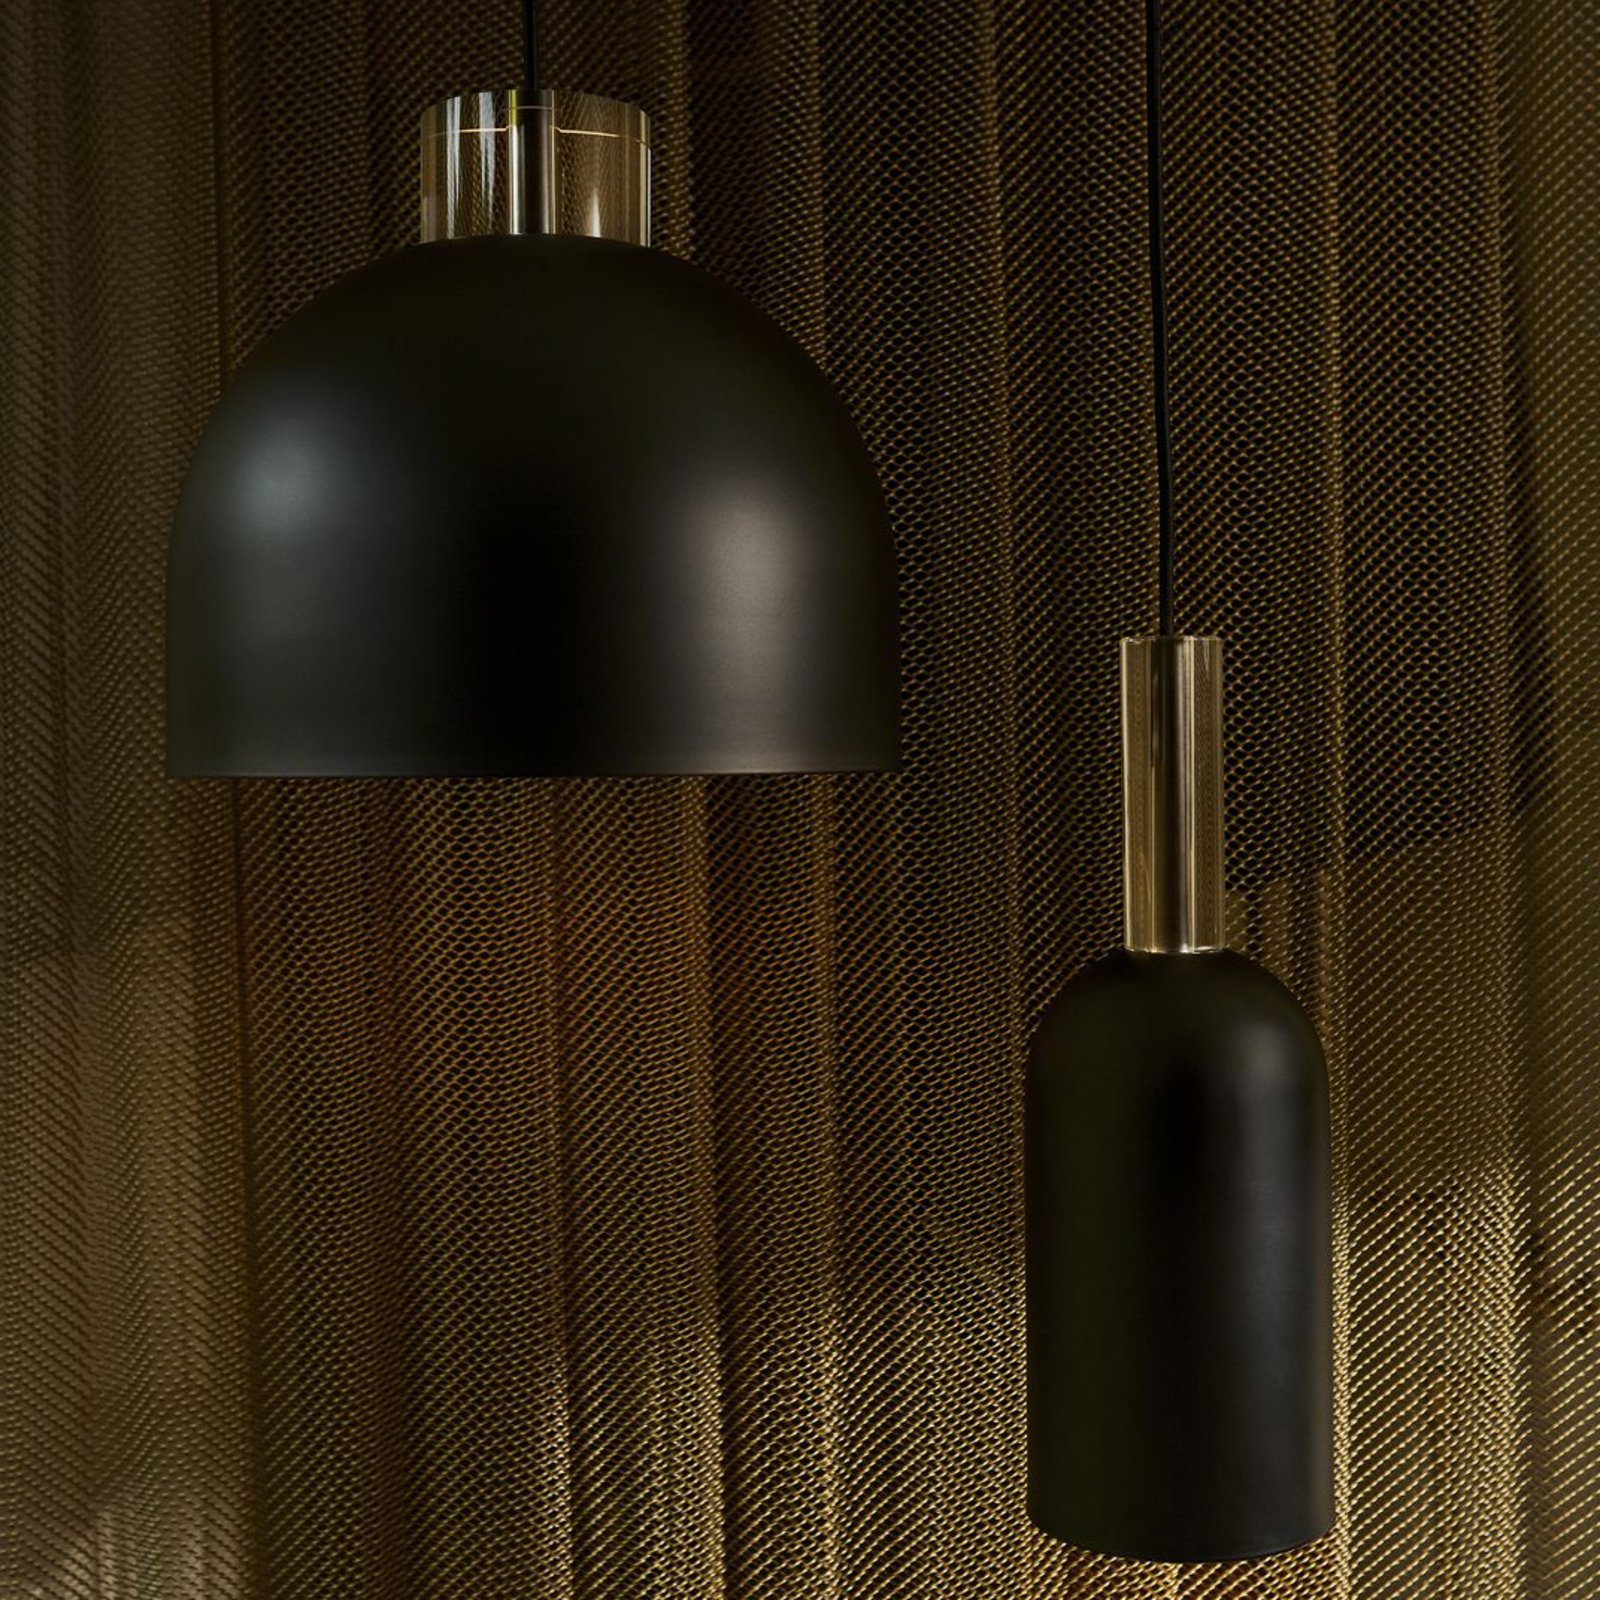 AYTM Luceo viseća svjetiljka, cilindar, crna, Ø 12 cm